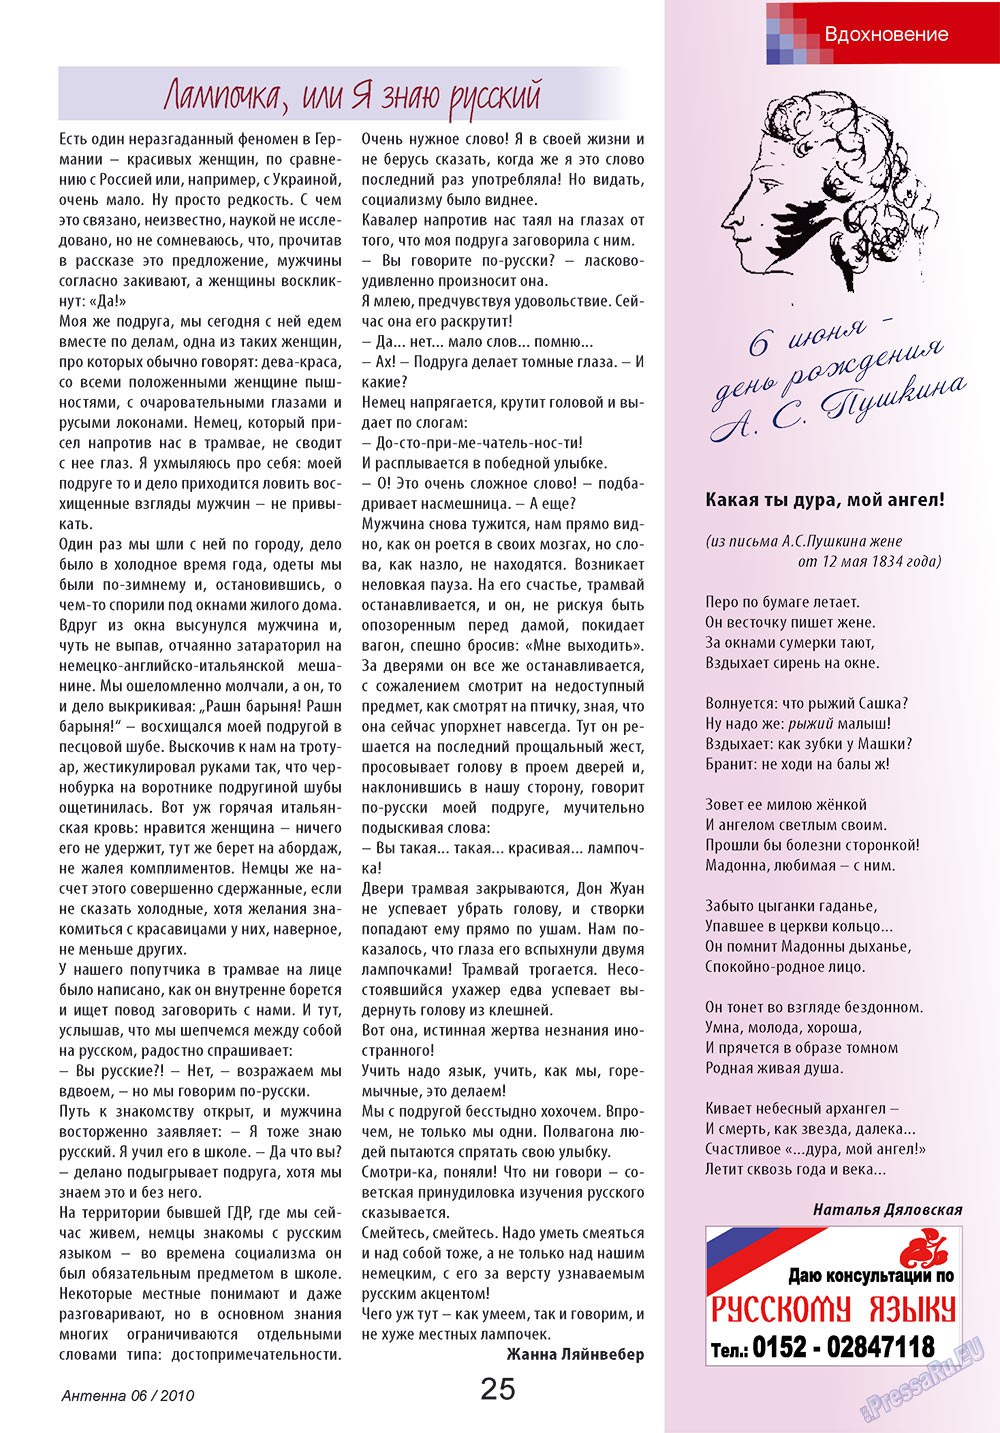 Антенна, журнал. 2010 №6 стр.25